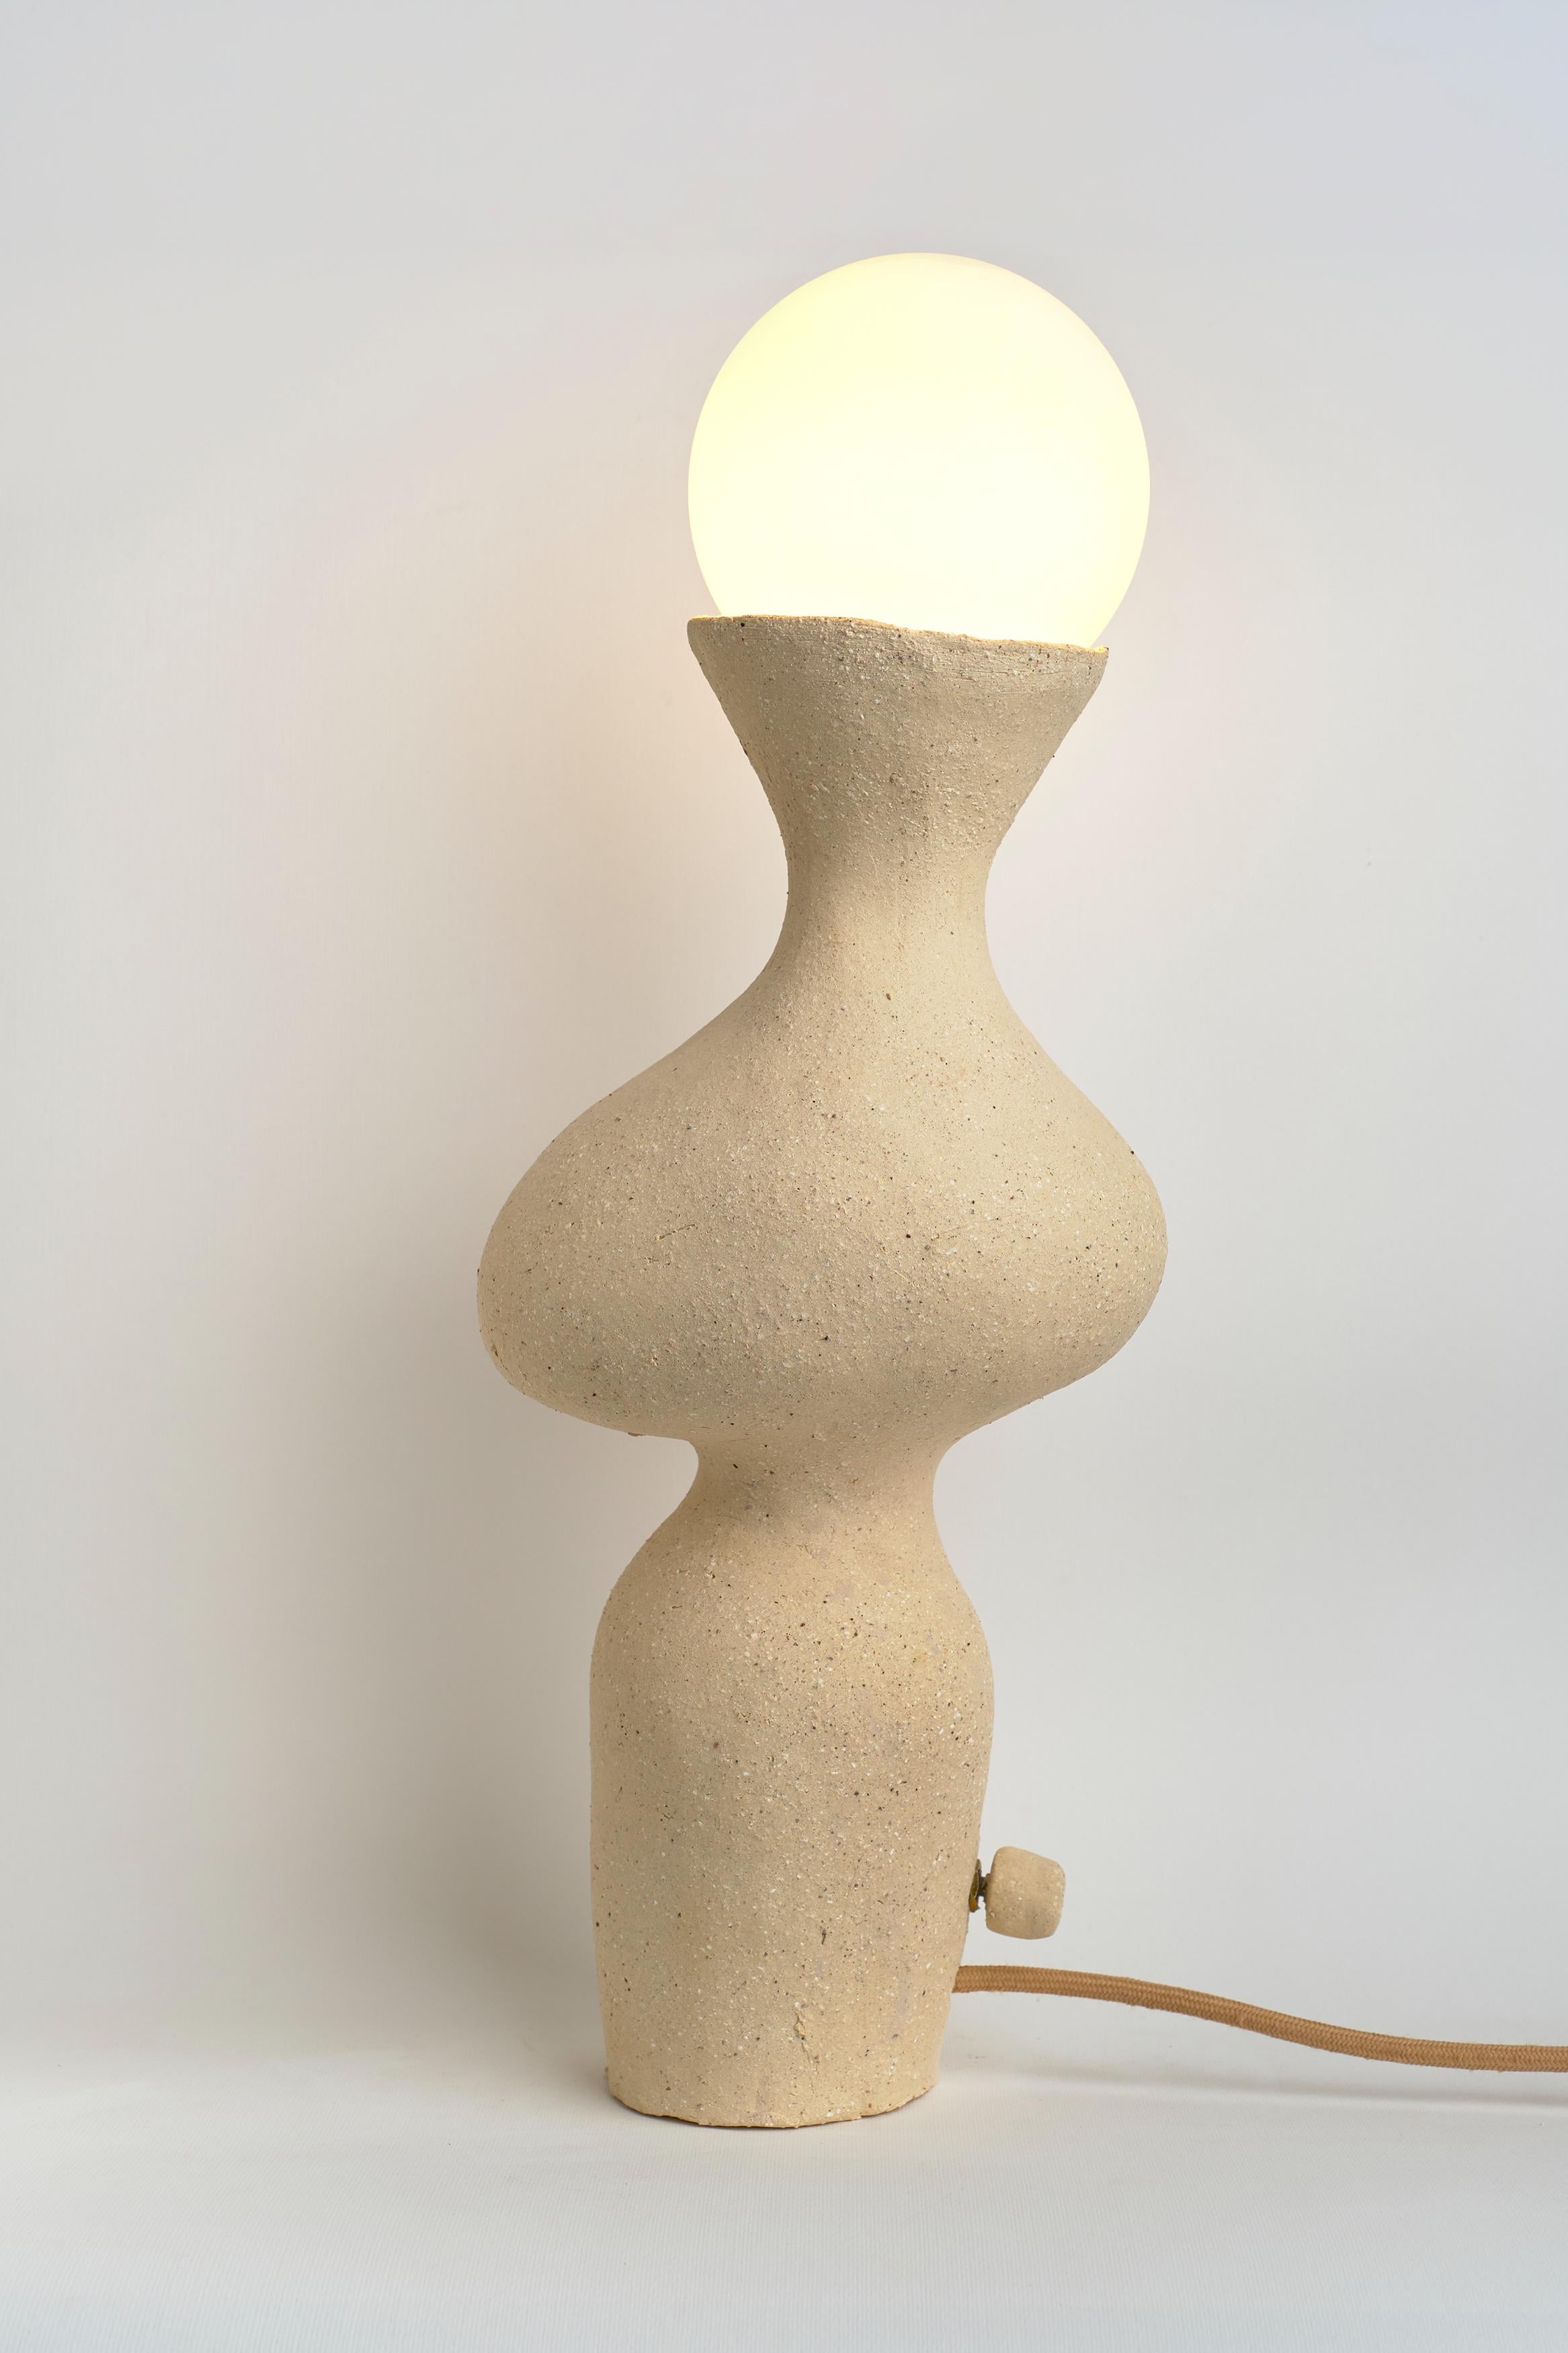 Lampe de table Silueta I de Camila Apaez
Unique en son genre
MATERIAL : Céramique, verre
Dimensions : L 14 x D 19 x H 49 cm

Ila Ceramica est née d'un processus de recherche intérieure où la céramique est devenue un espace de présence, de silence,